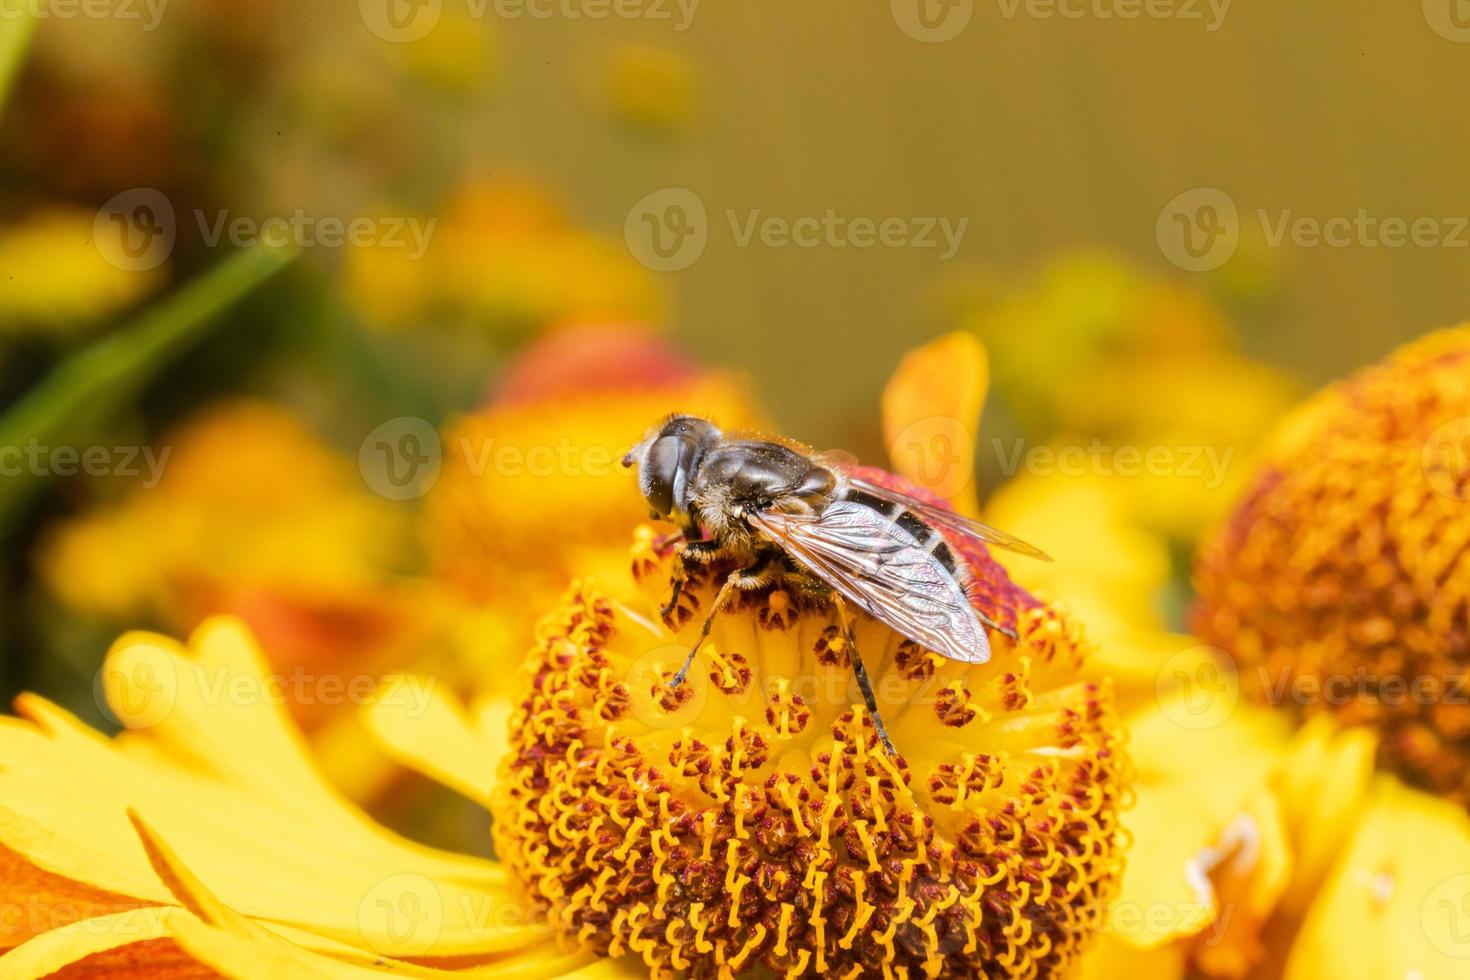 abelha coberta de pólen amarelo bebe néctar, flor polinizadora. primavera floral natural inspirador ou fundo de jardim florescendo de verão. vida de insetos, macro extrema close-up foco seletivo foto